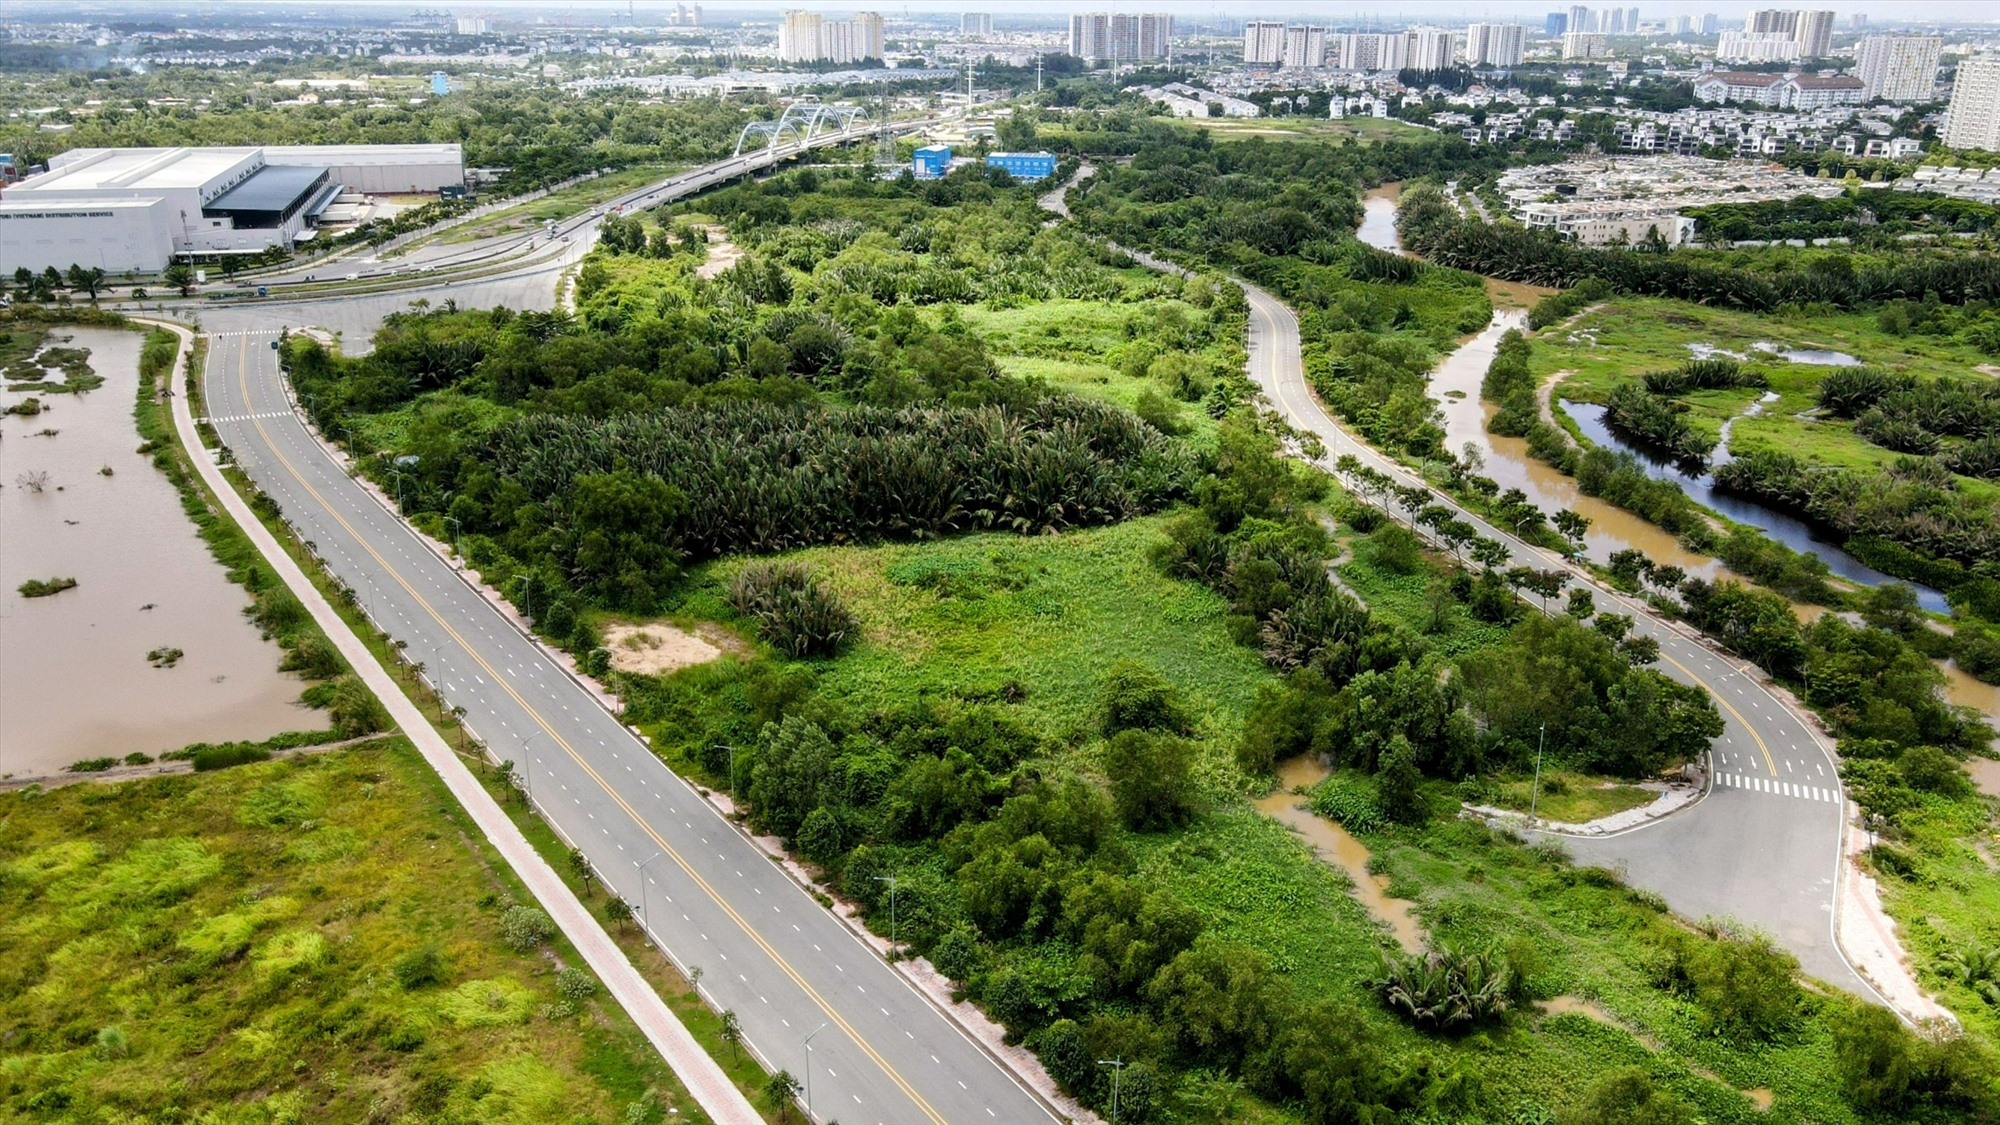 Theo Sở GTVT TP Hồ Chí Minh, đường Vành đai 2 là tuyến đường quan trọng của thành phố để kết nối các khu công nghiệp, đô thị và các tuyến đường trục xuyên tâm, nhằm giảm tải cho khu vực nội đô, góp phần tăng khả năng kết nối giao thông với các tuyến đường bộ hướng tâm, giữa các địa phương của vùng TP Hồ Chí Minh.